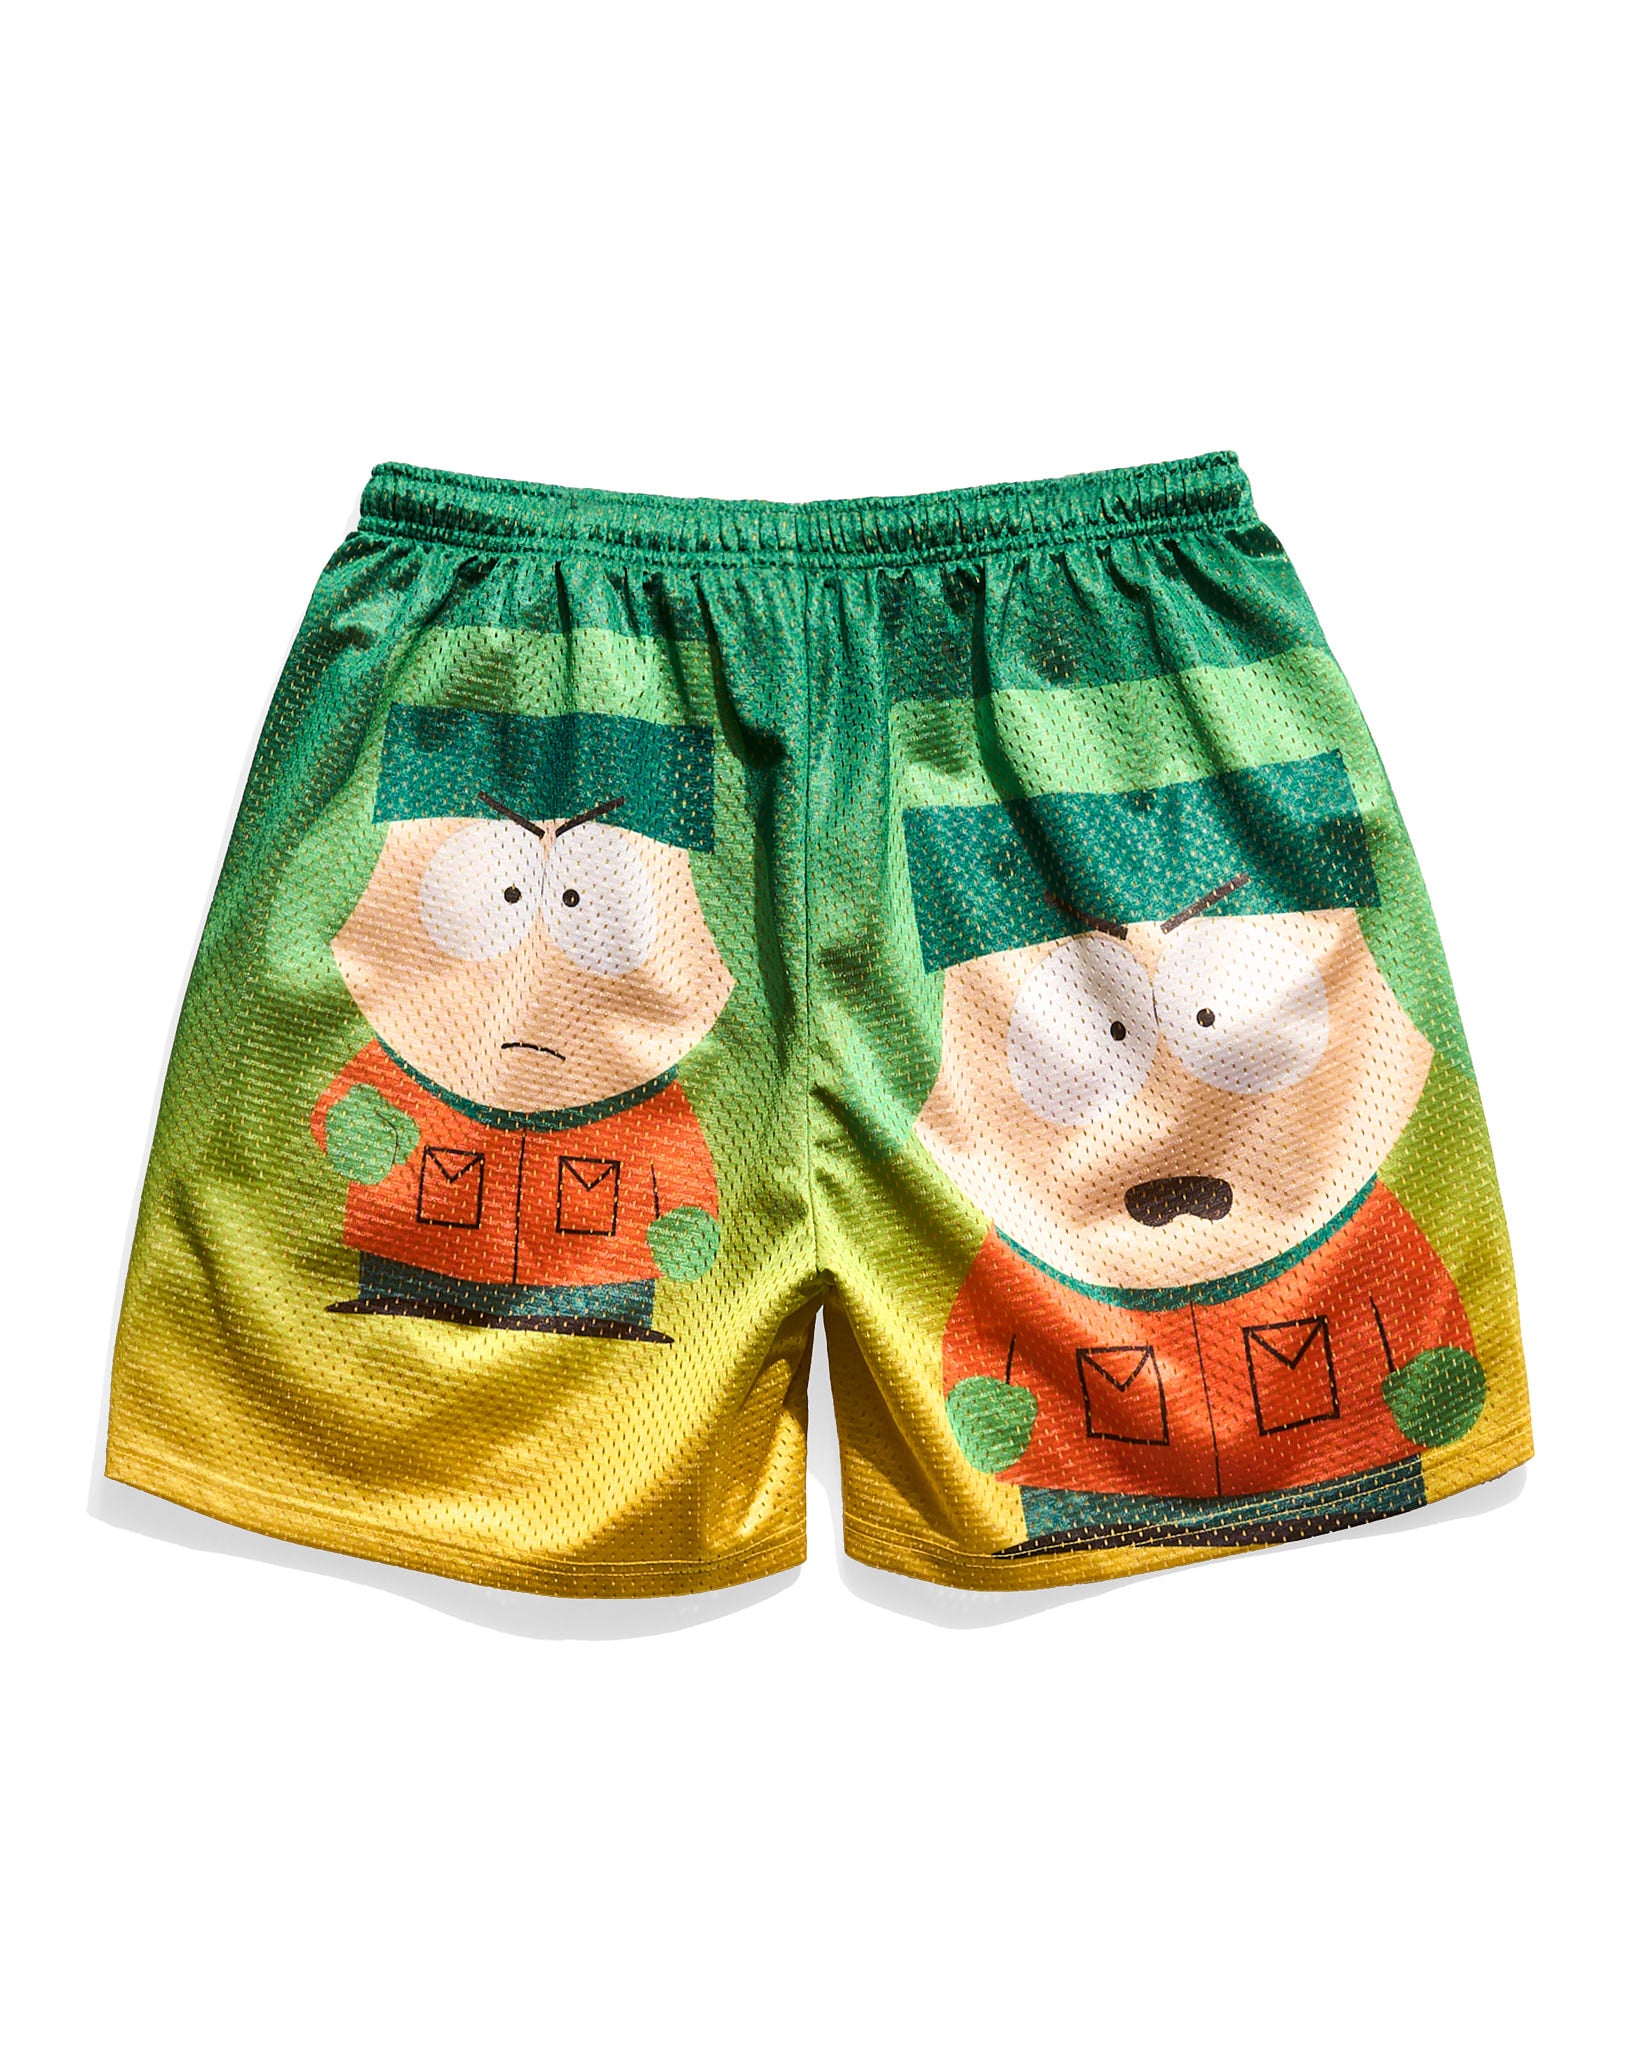 South Park Kyle Broflovski Retro Shorts